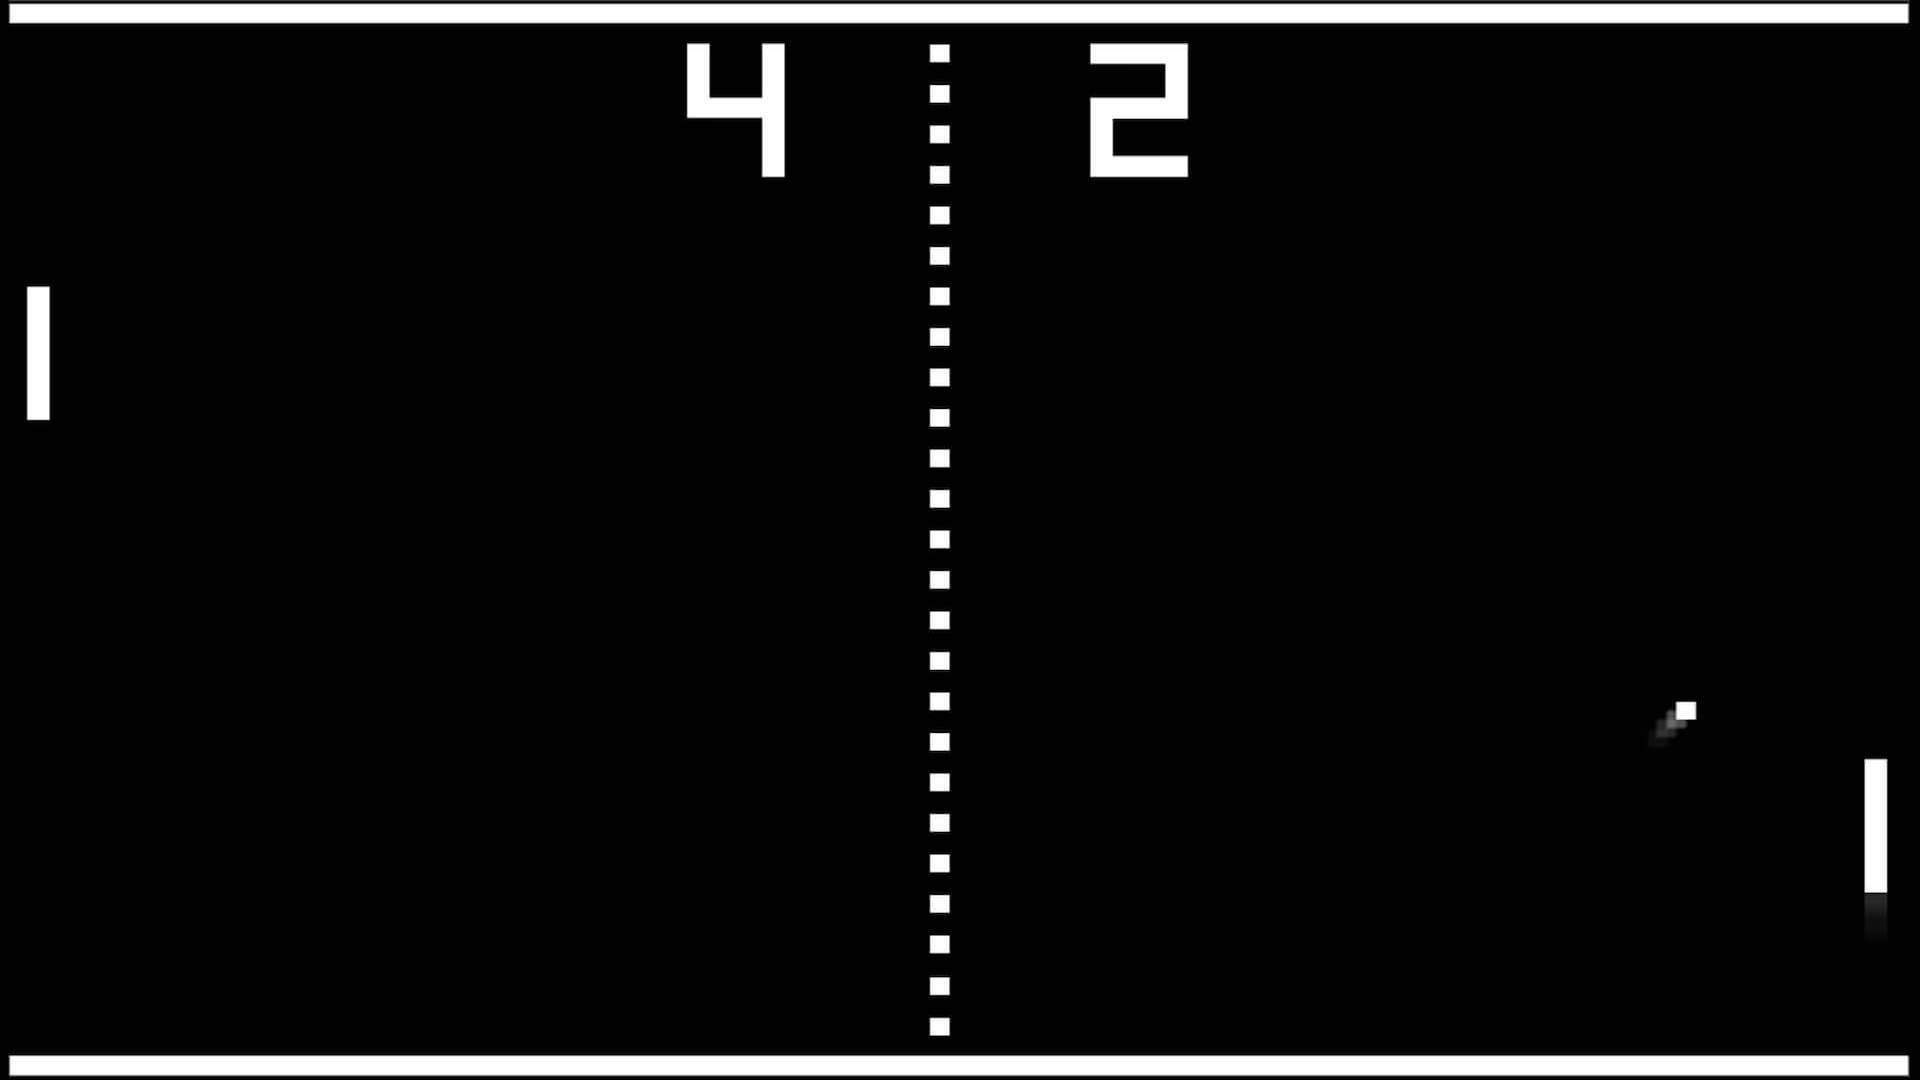 Atari table tennis game